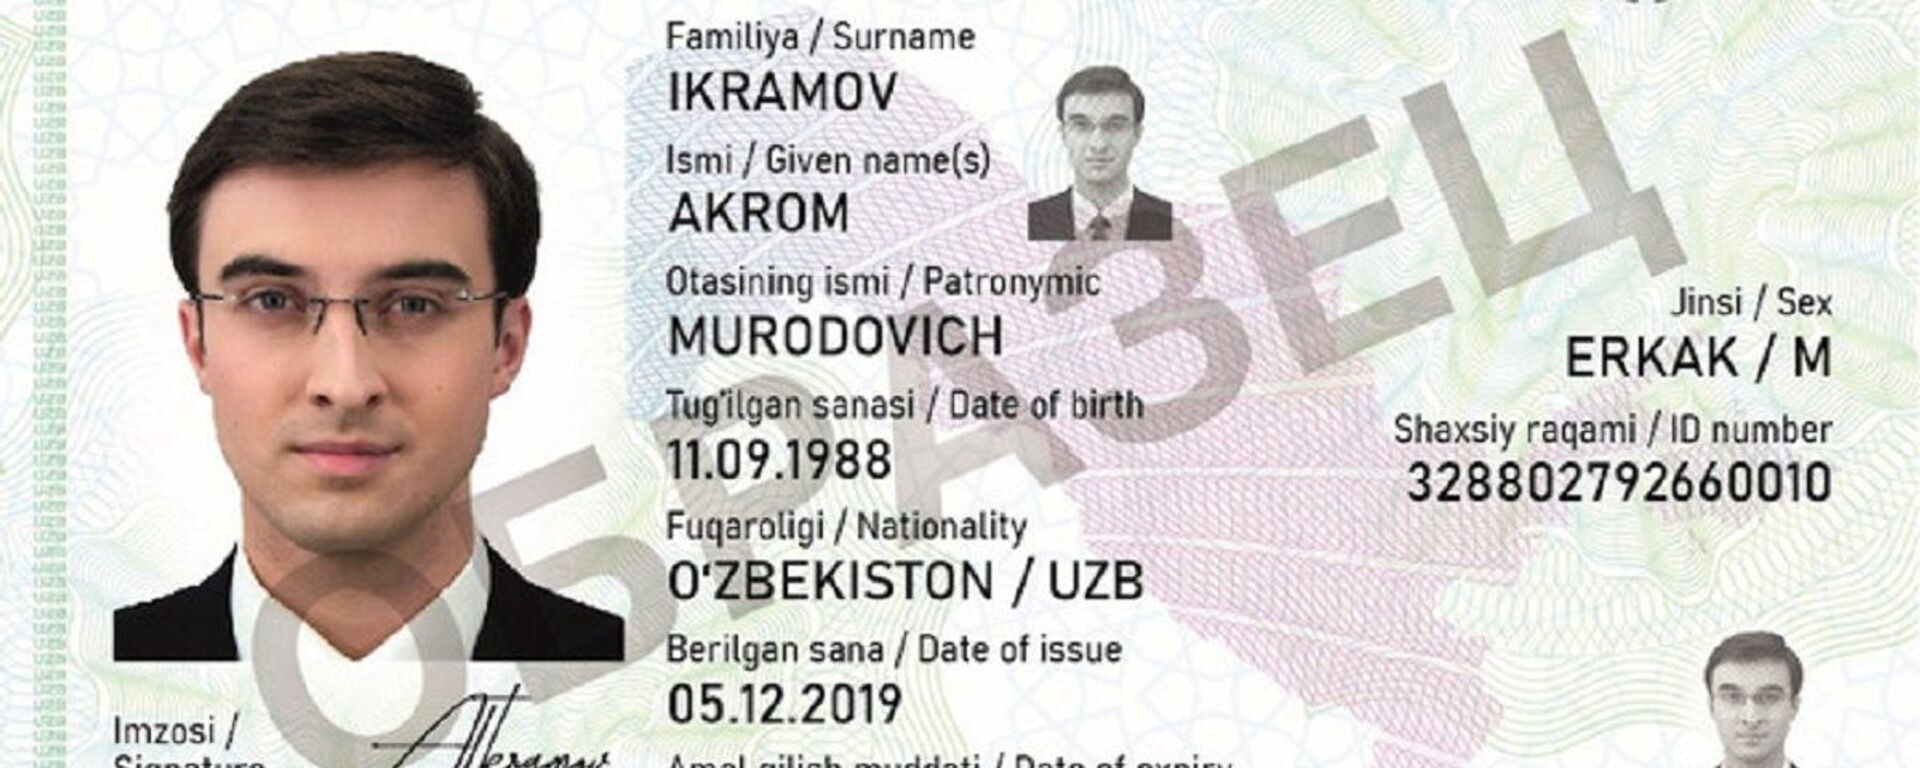 С 1 января 2021 года вместо биометрического паспорта будут выдаваться ID-карты  - Sputnik Ўзбекистон, 1920, 31.01.2021